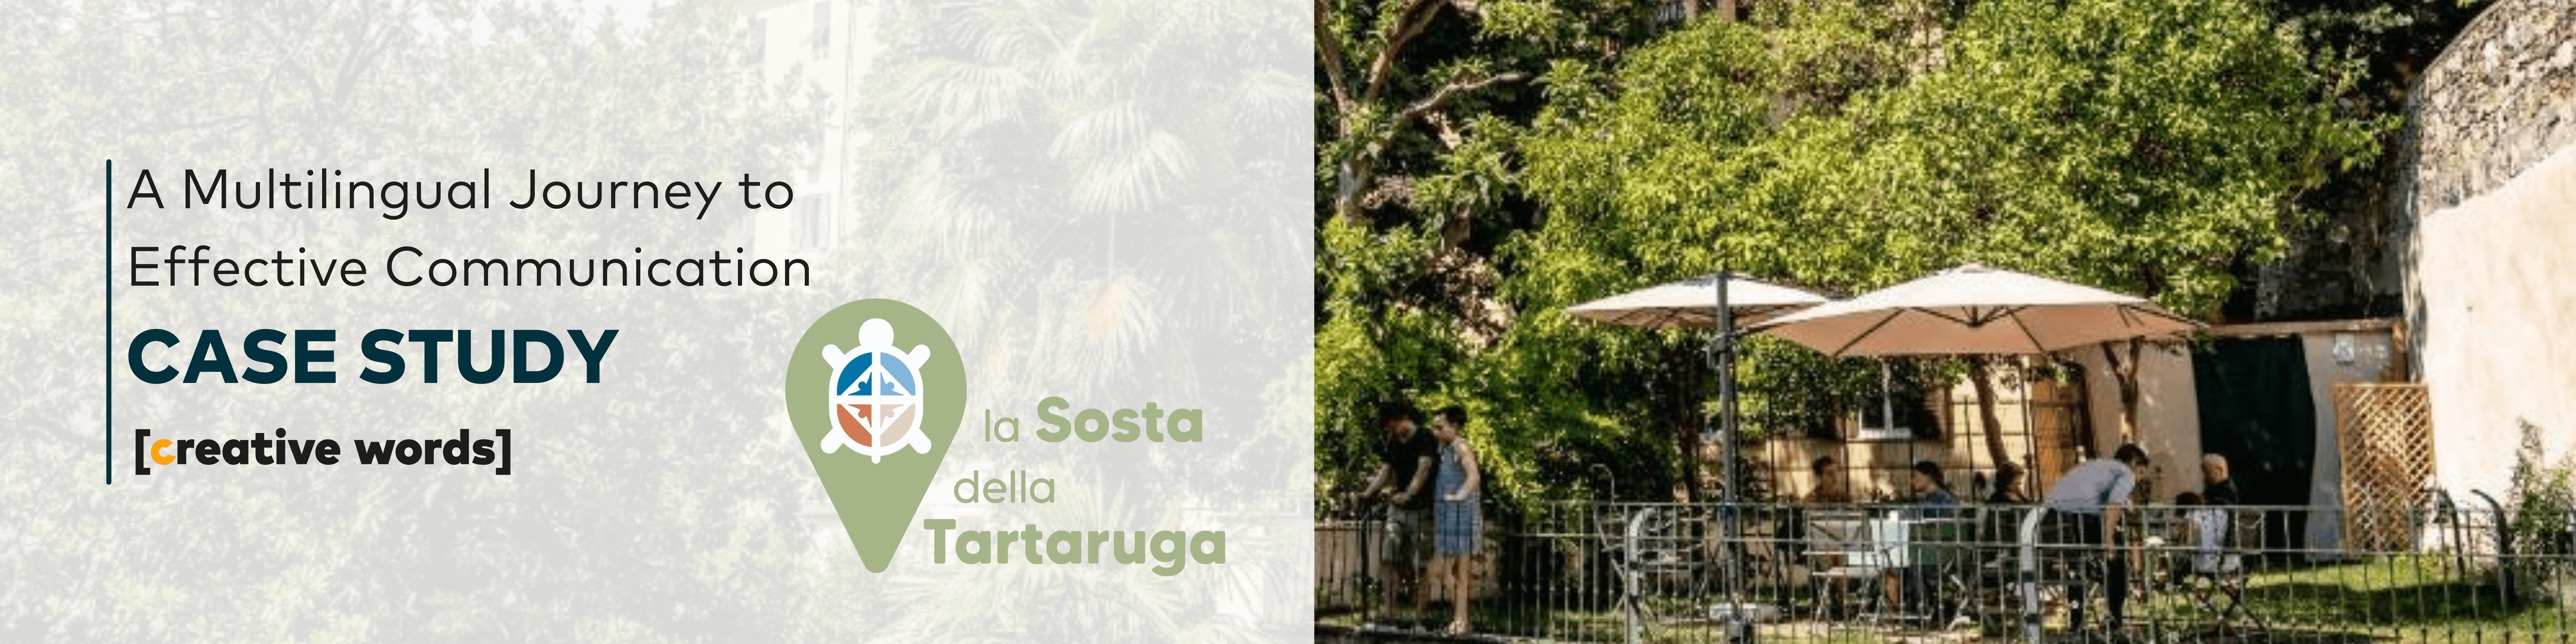 A multilingual journey to effective communication - La Sosta della Tartaruga